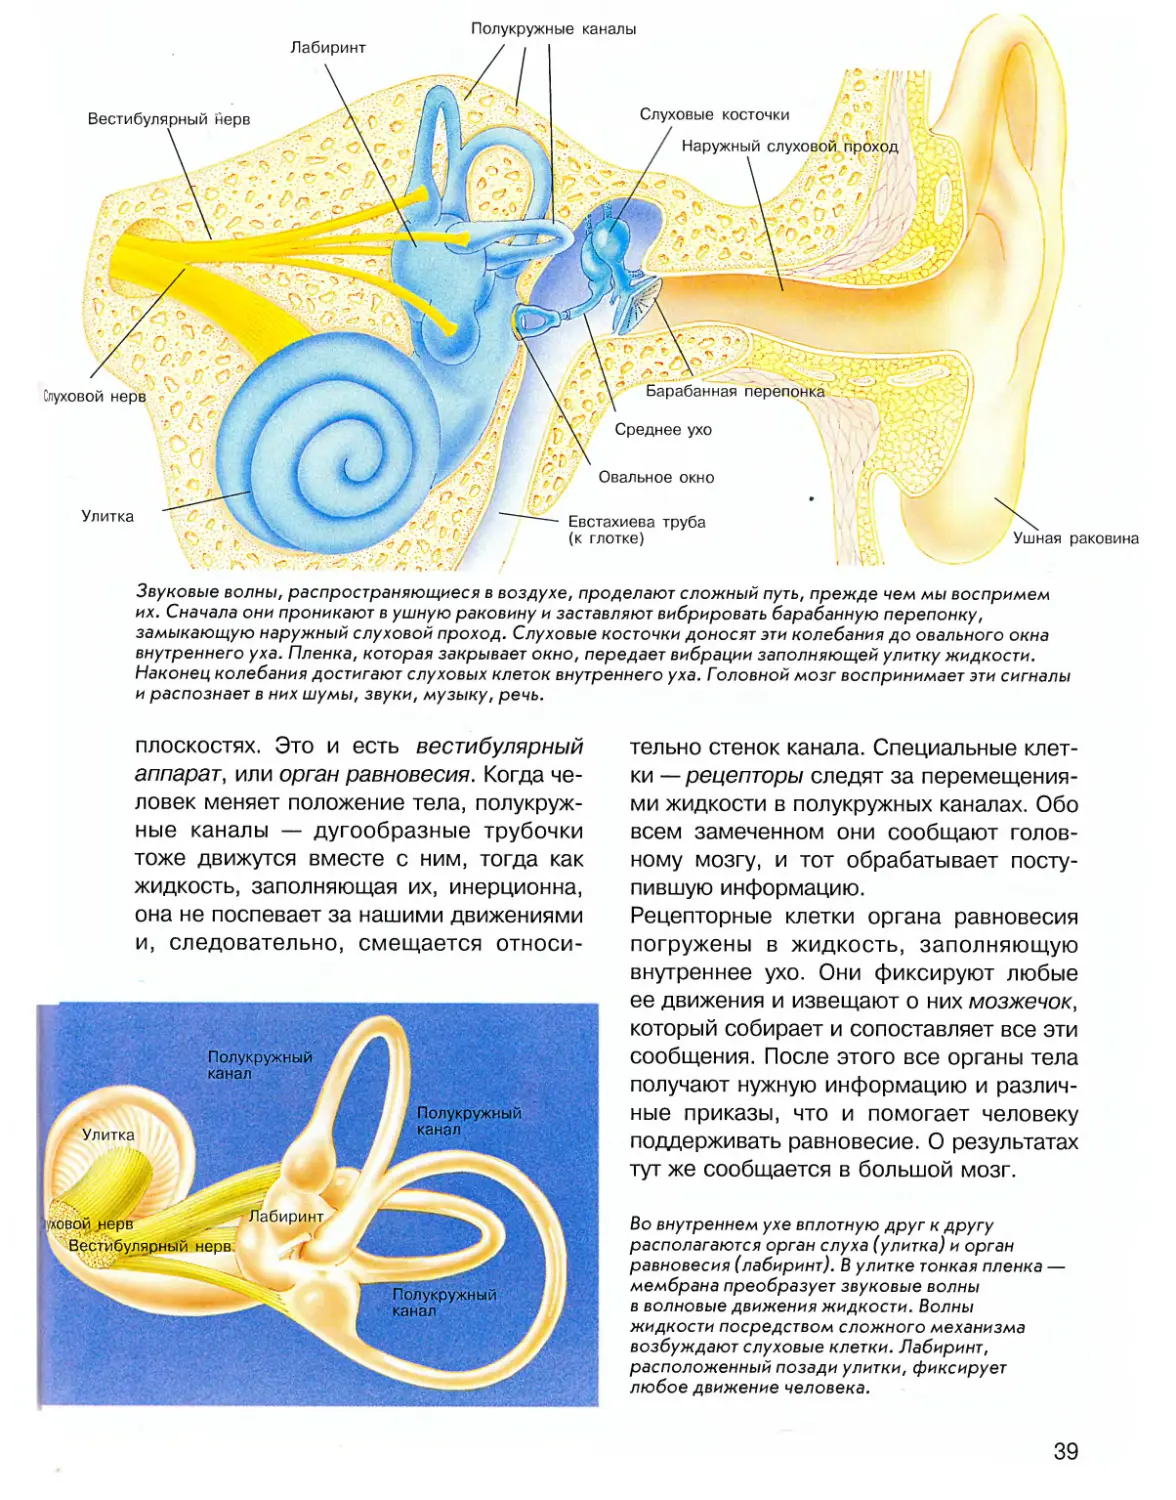 Улитка слухового аппарата. Вестибулярный аппарат внутреннего уха. Полукружные каналы внутреннего уха. Внутреннее ухо вестибулярный аппарат. Строение полукружных каналов внутреннего уха.